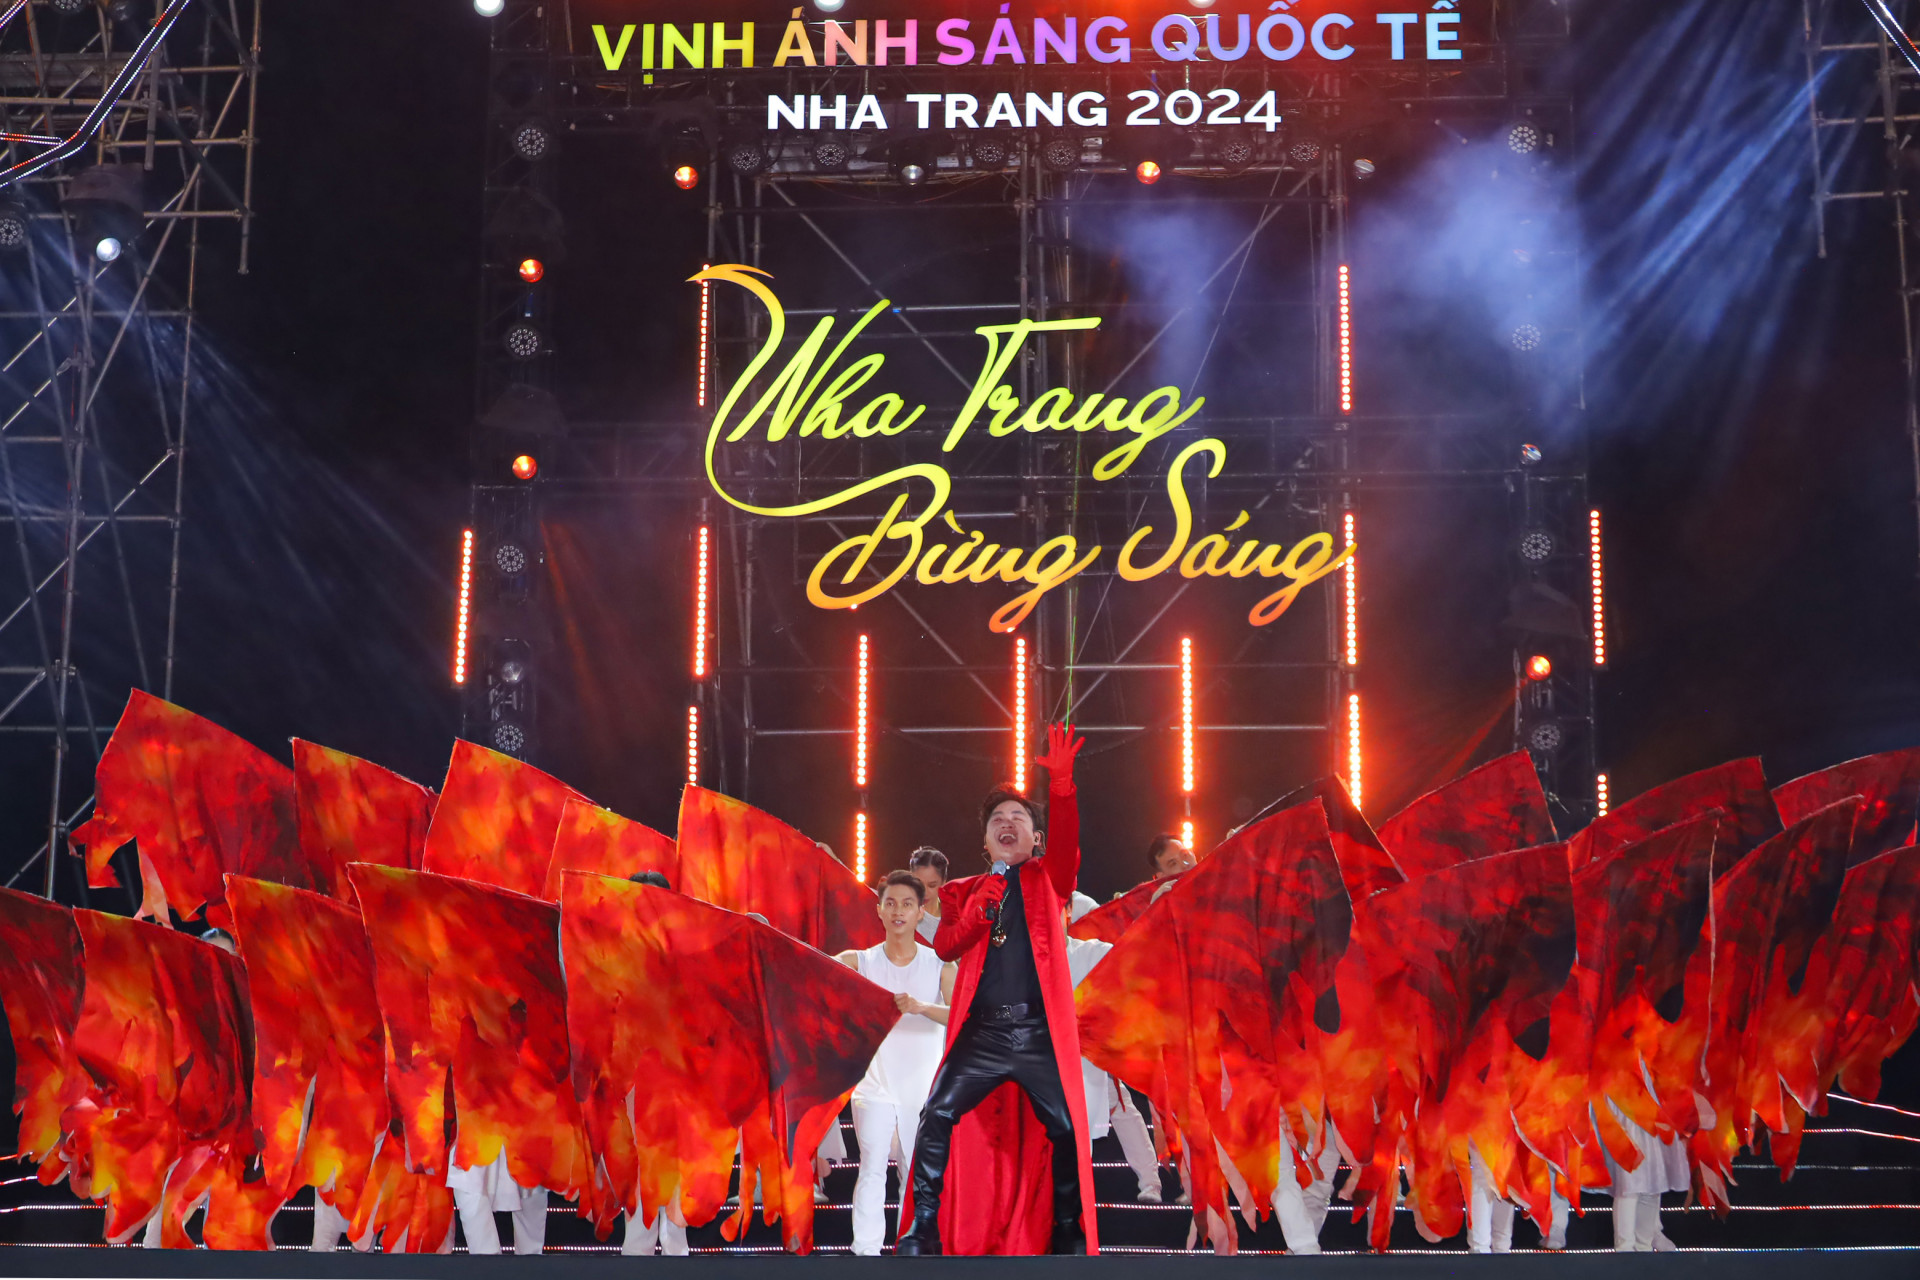 Ca sĩ Tùng Dương biểu diễn ca khúc Cánh chim phượng Hoàng tại đêm khai mạc Lễ hội Vịnh ánh sáng quốc tế Nha Trang 2024, ảnh; Nhân Tâm